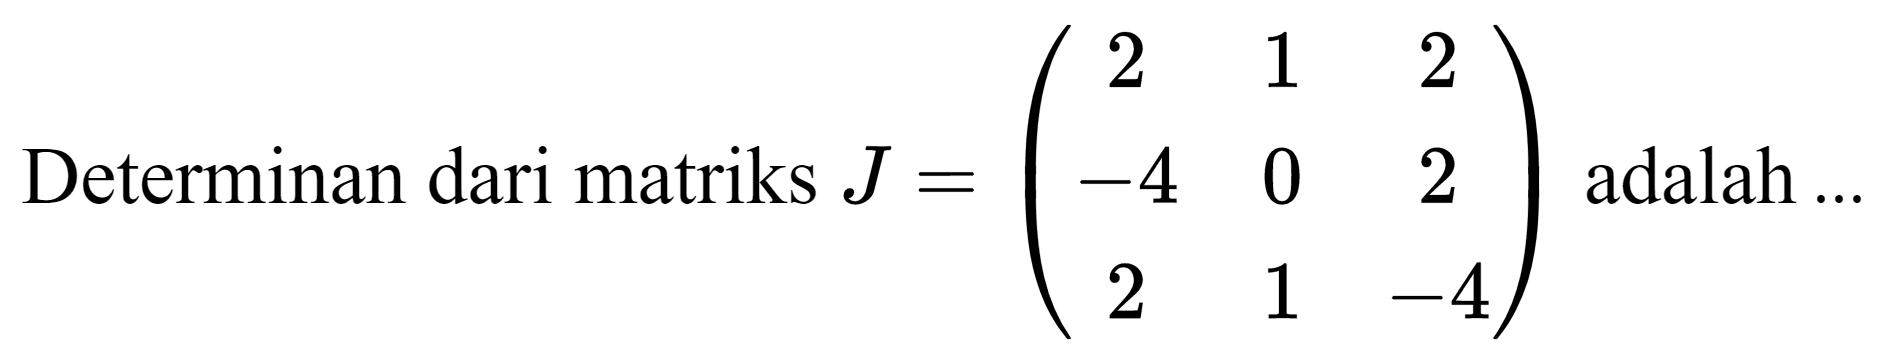 Determinan dari matriks  J=(2  1  2  -4  0  2  2  1  -4)  adalah ...